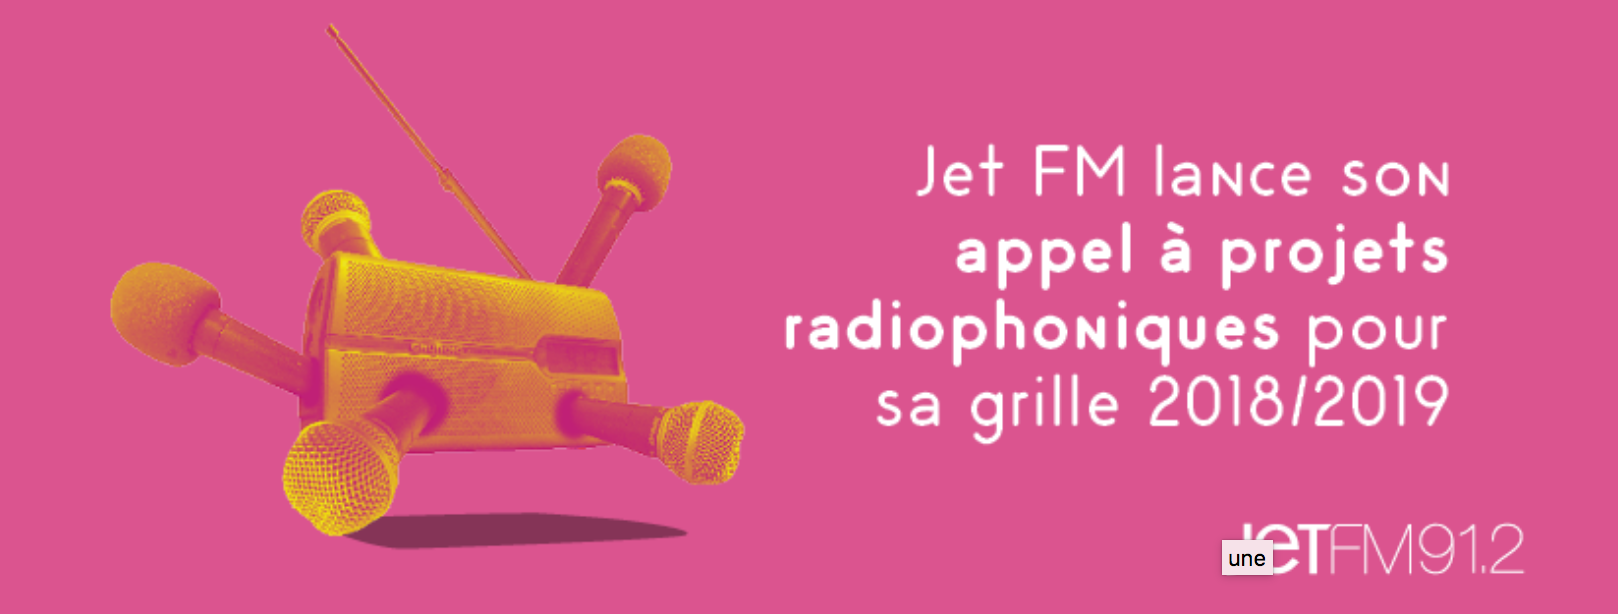 Jet FM lance son appel à projets radiophoniques